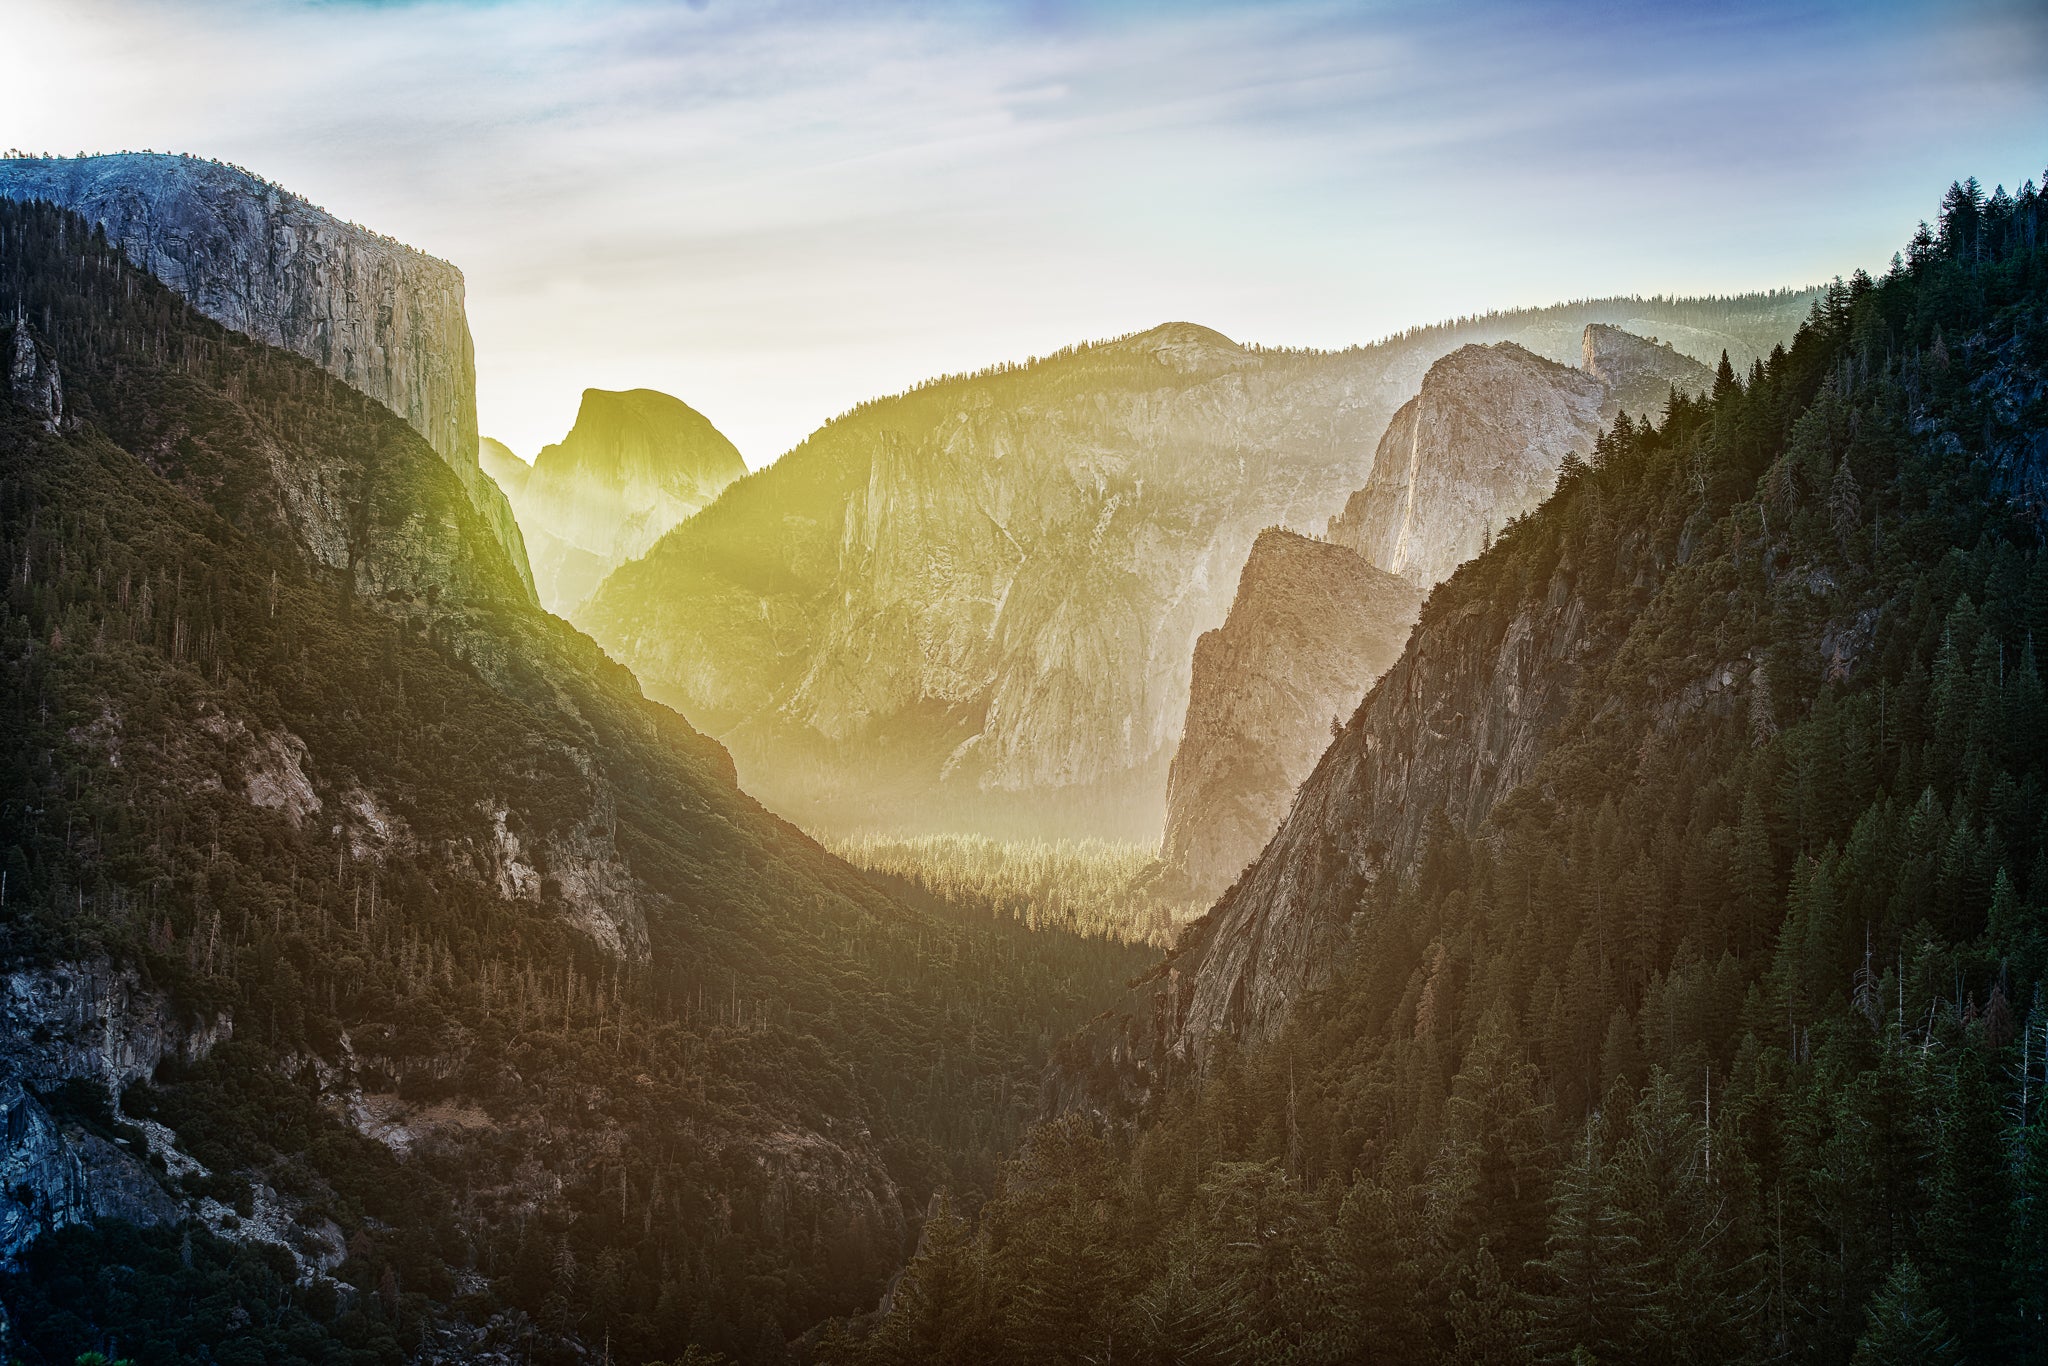 A fine art landscape photograph titled "The Valley Awakens" by Cameron Dreaux of Dreaux Fine Art.